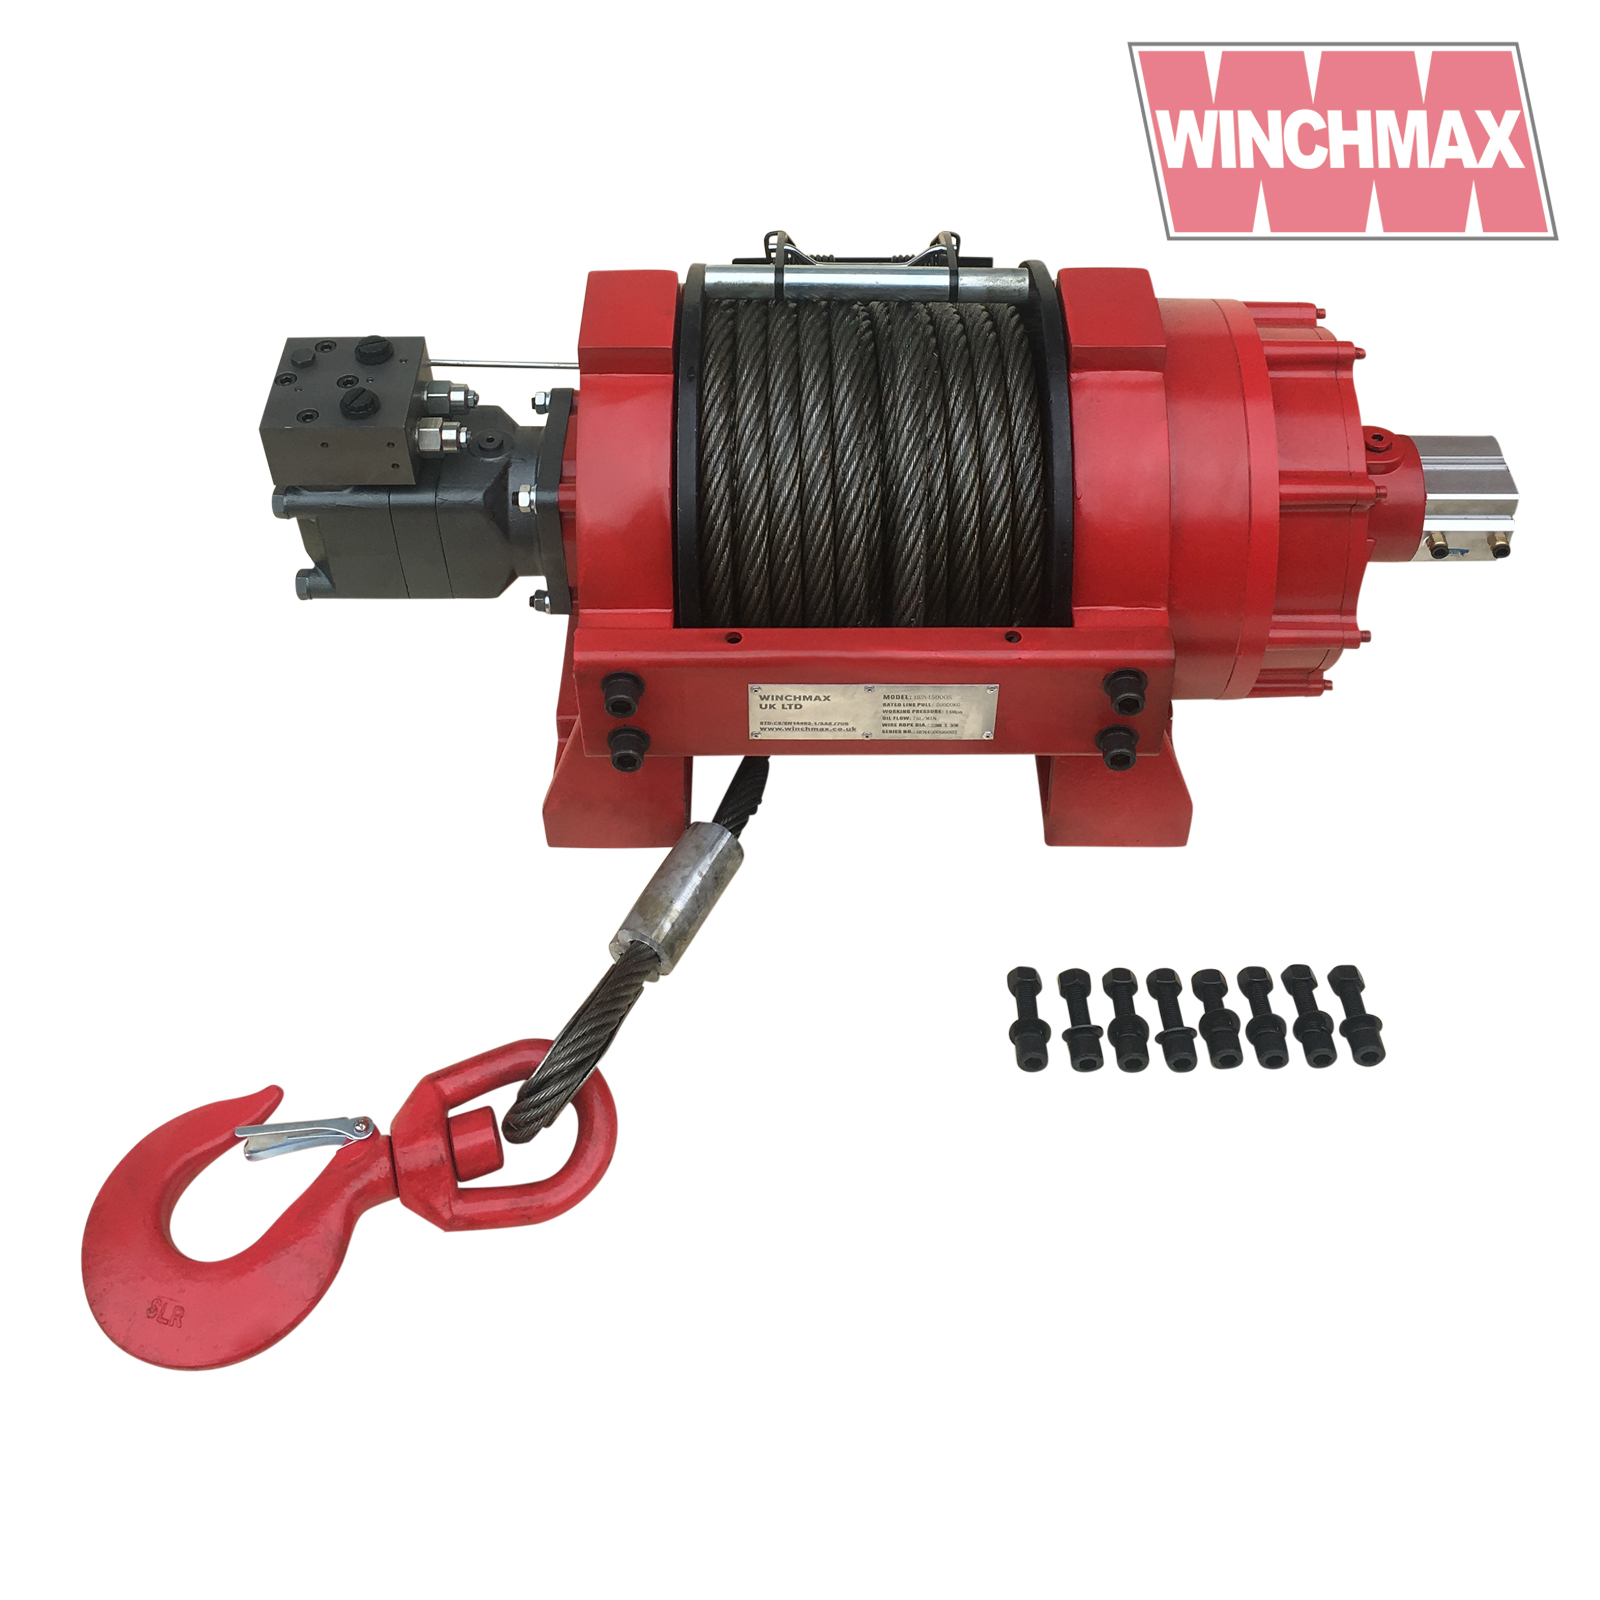 Winchmax 35000lb Hydraulic Winch